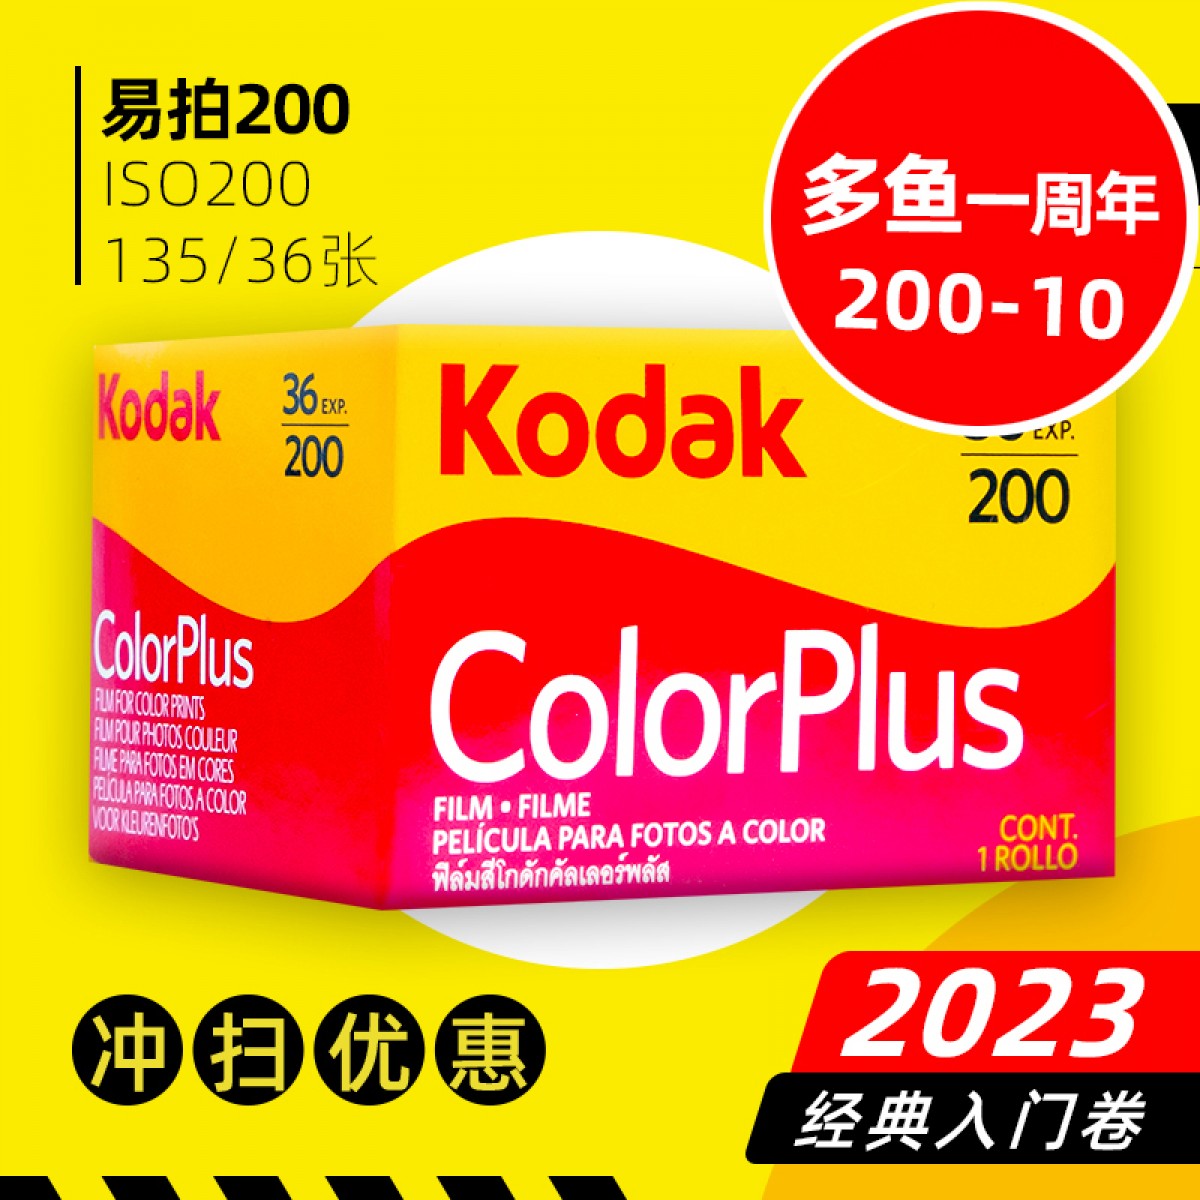 柯达kodak易拍cp200 ColorPlus 135彩色负片胶卷 2023 人像练习卷